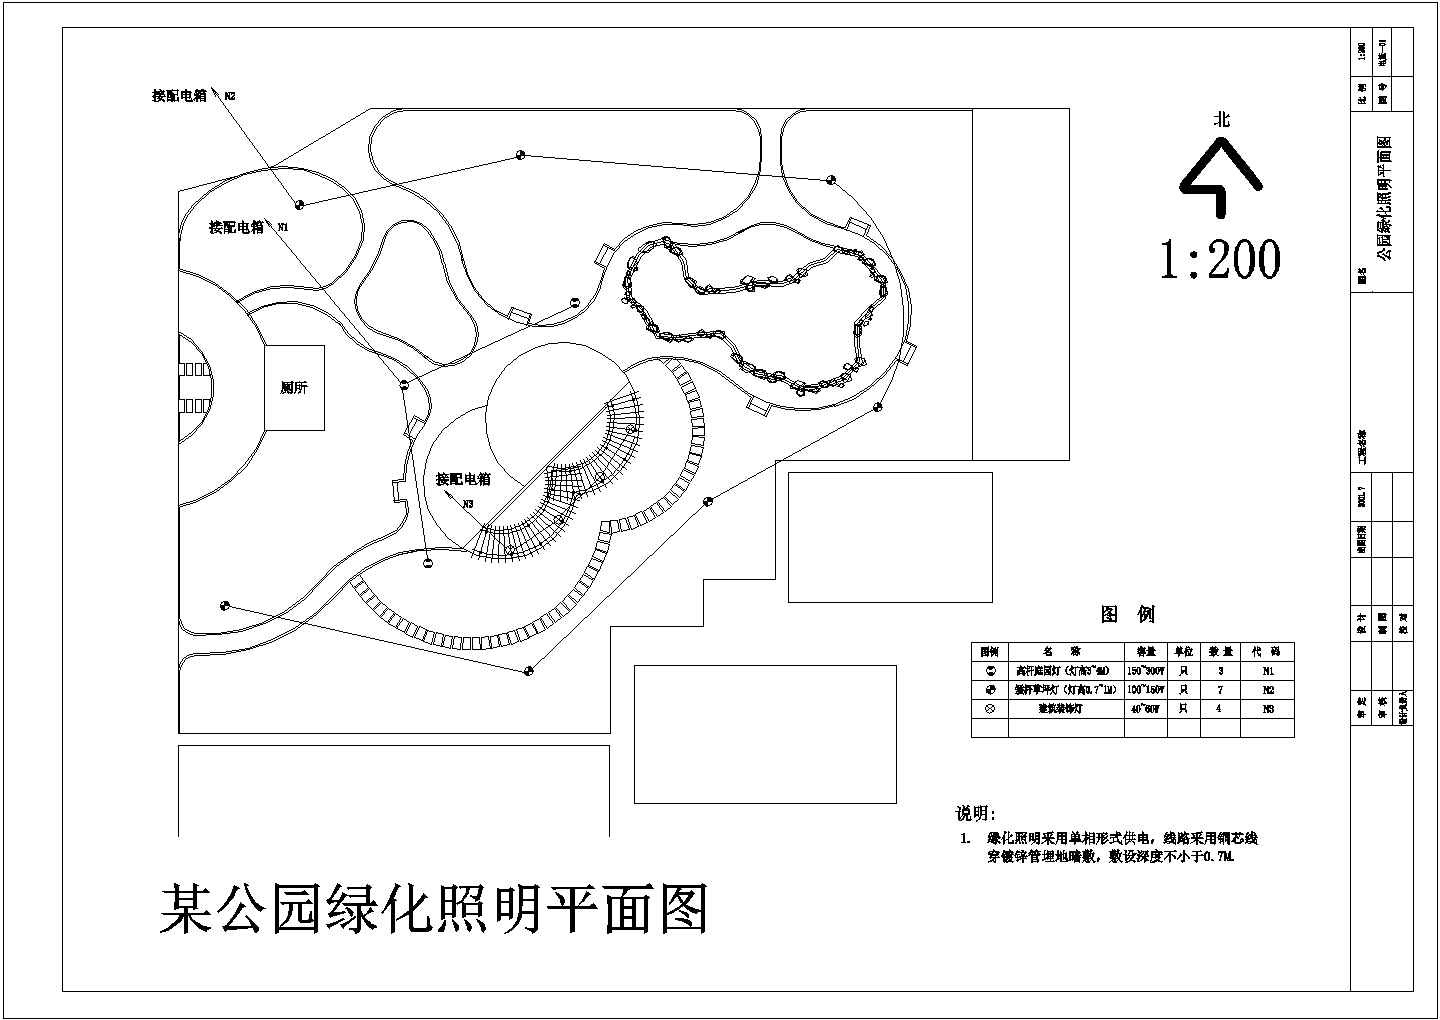 东山头村公园园林绿化规划设计施工图